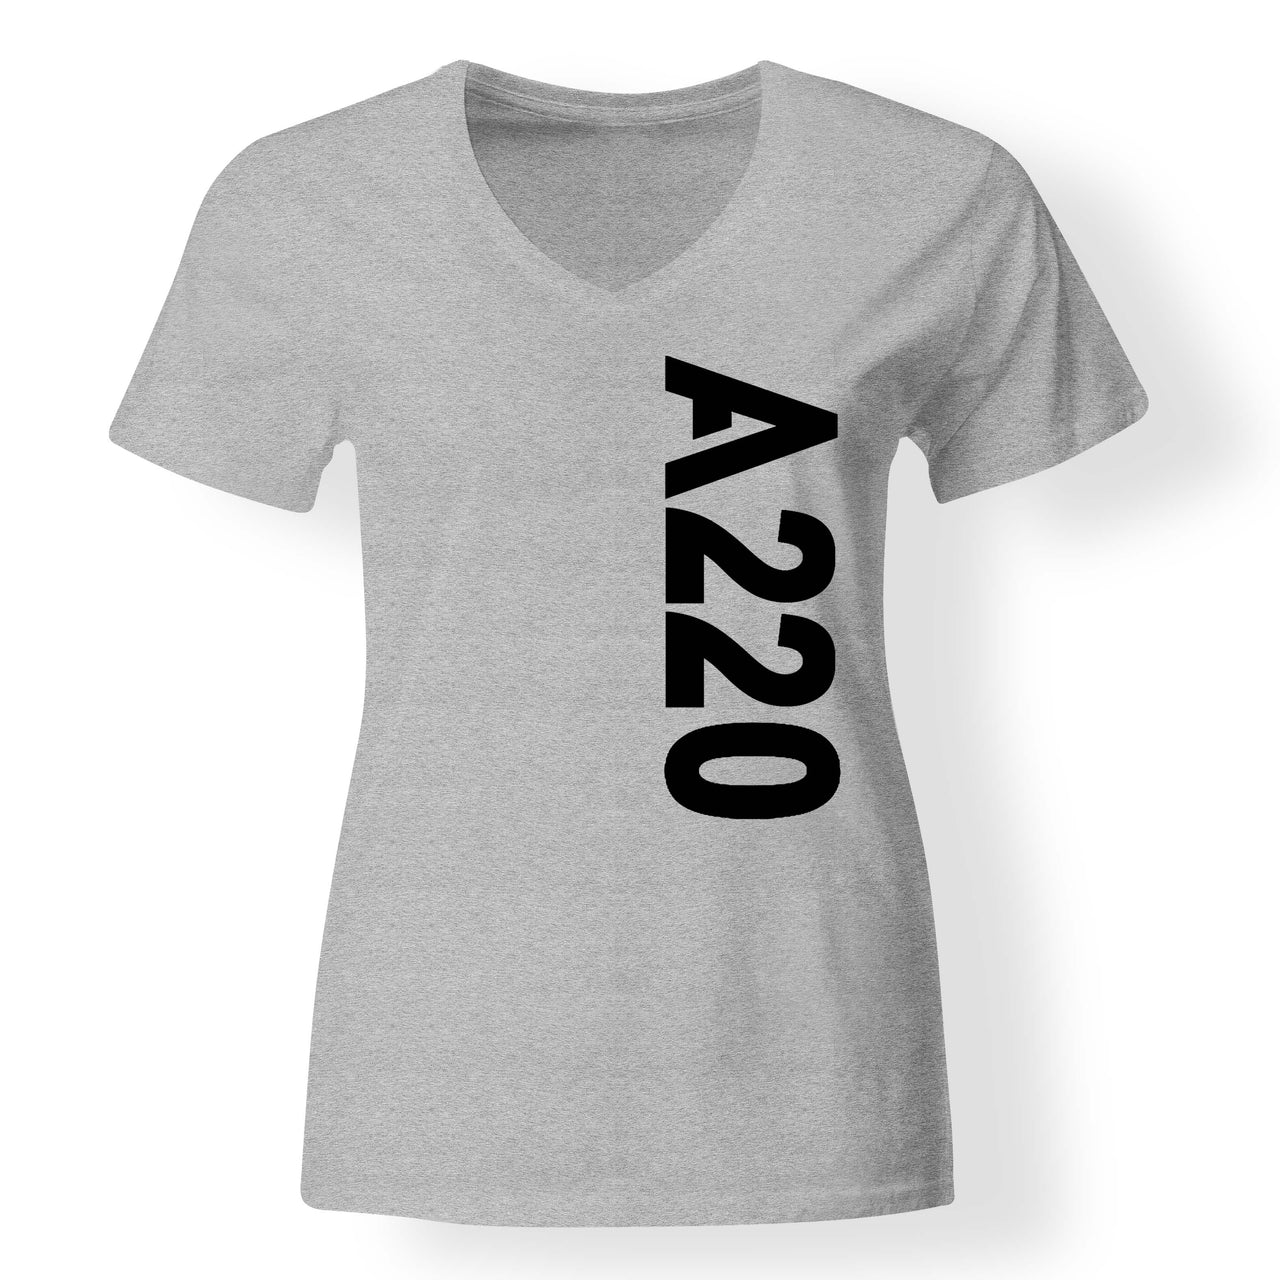 A220 Text Designed V-Neck T-Shirts